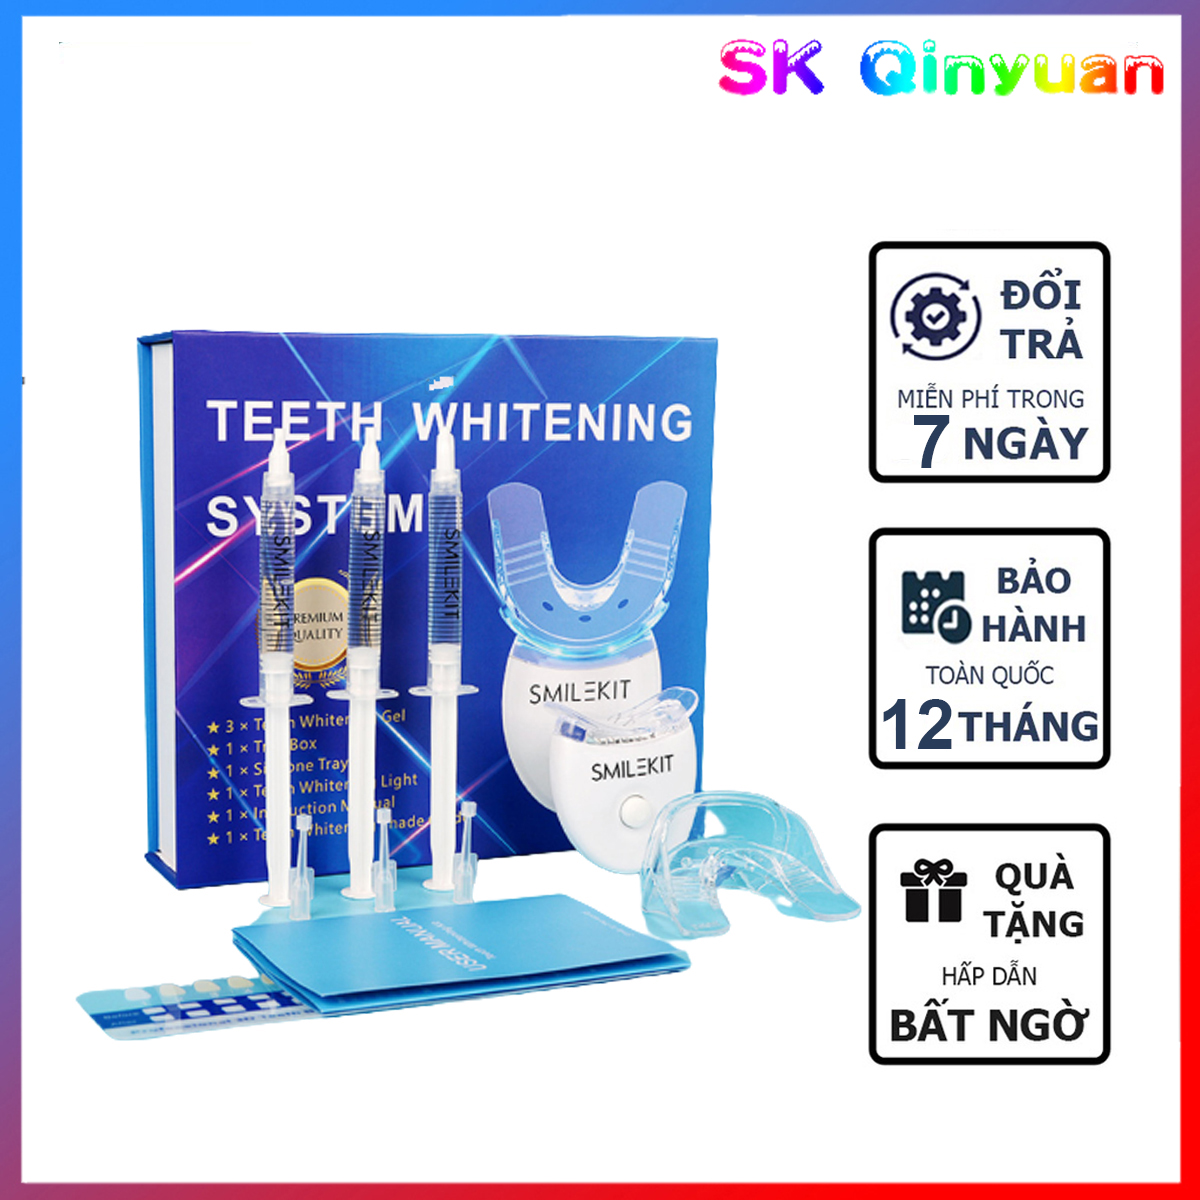 Máy tẩy trắng răng Smile Kit giúp làm trắng răng được nha sĩ khuyên dùng